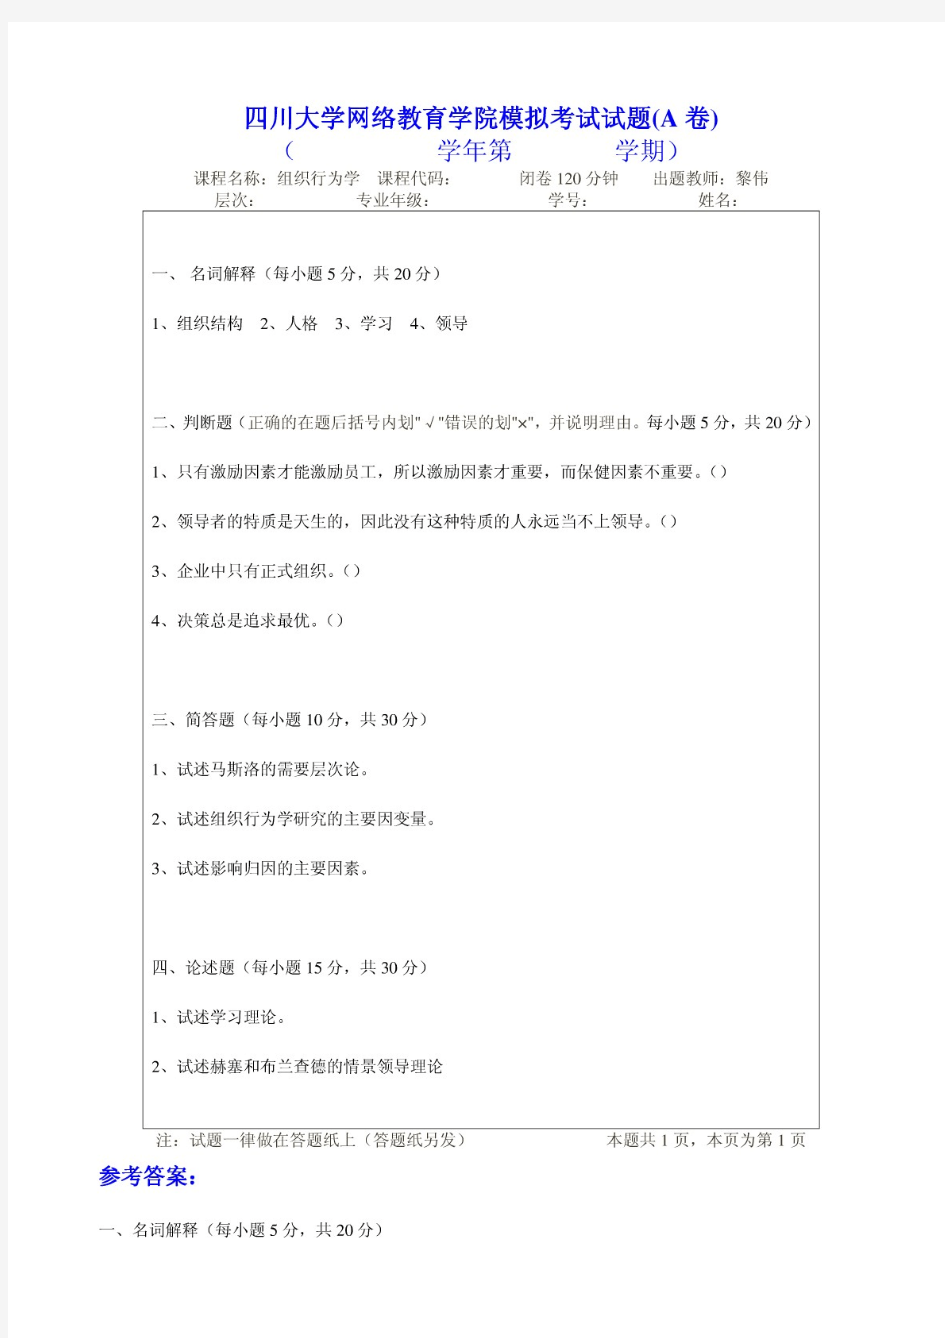 四川大学网络教育学院模拟考试试题(a卷)